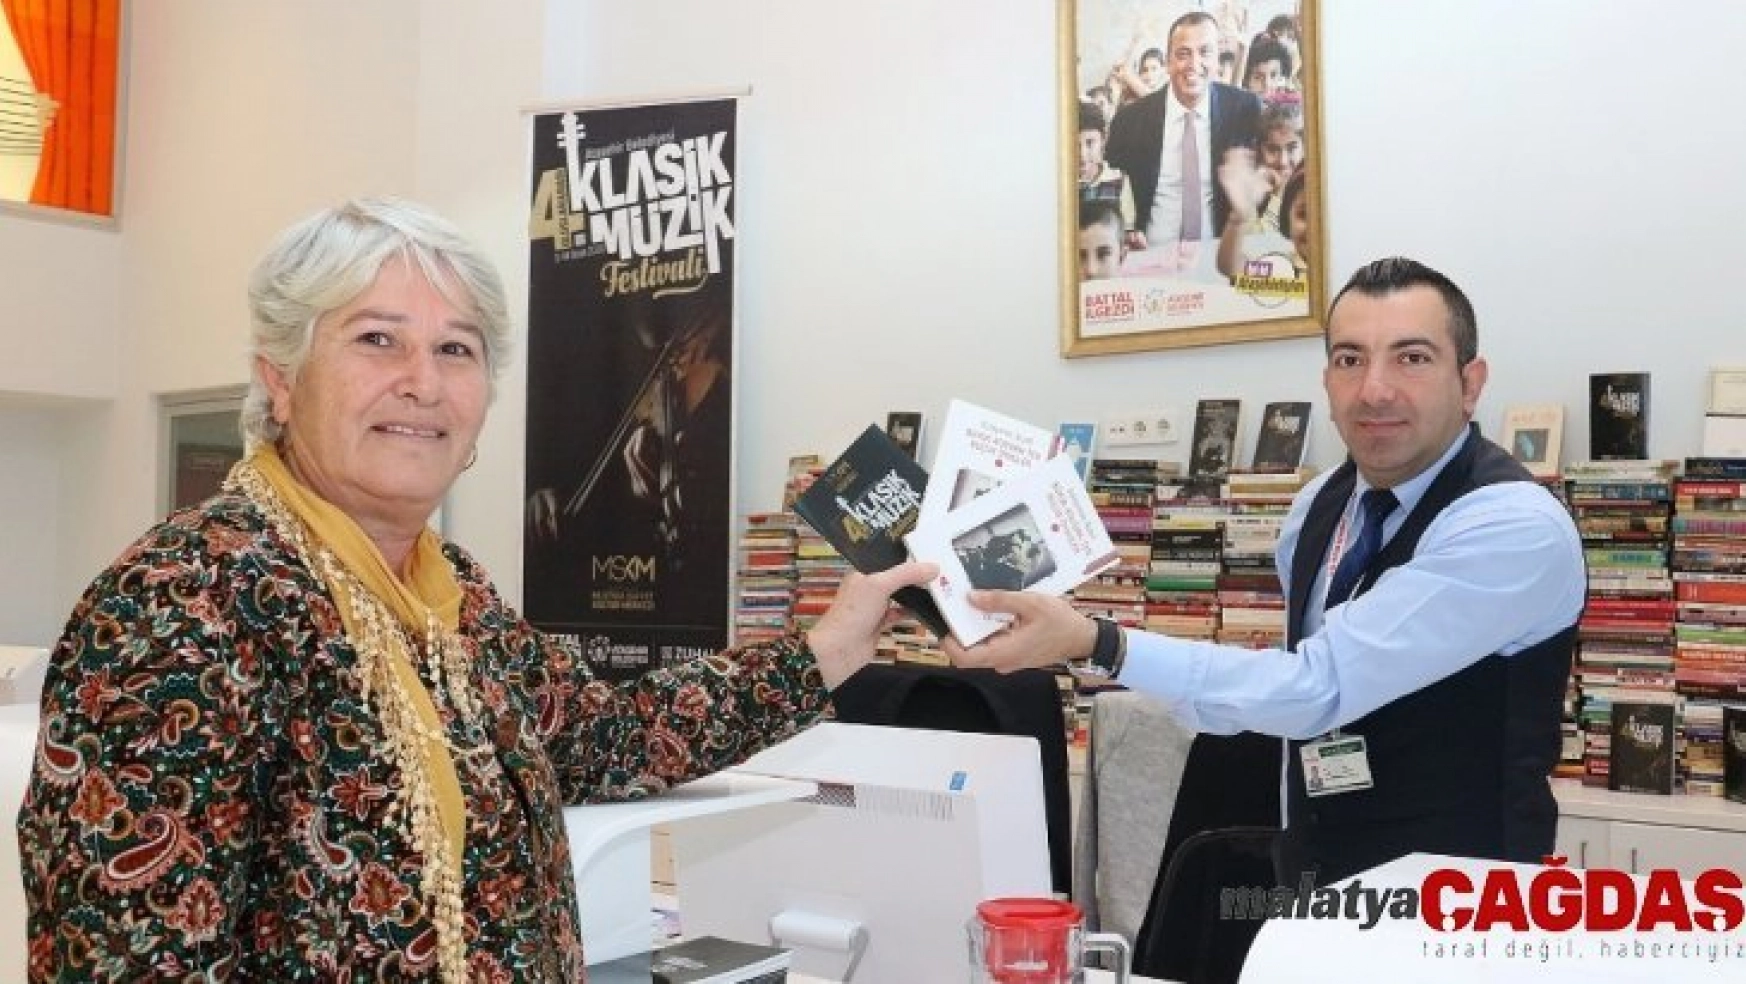 Ataşehir'de klasik müzik festivali'nde 'bir kitap, bir bilet' kampanyasıyla bin kitap toplandı